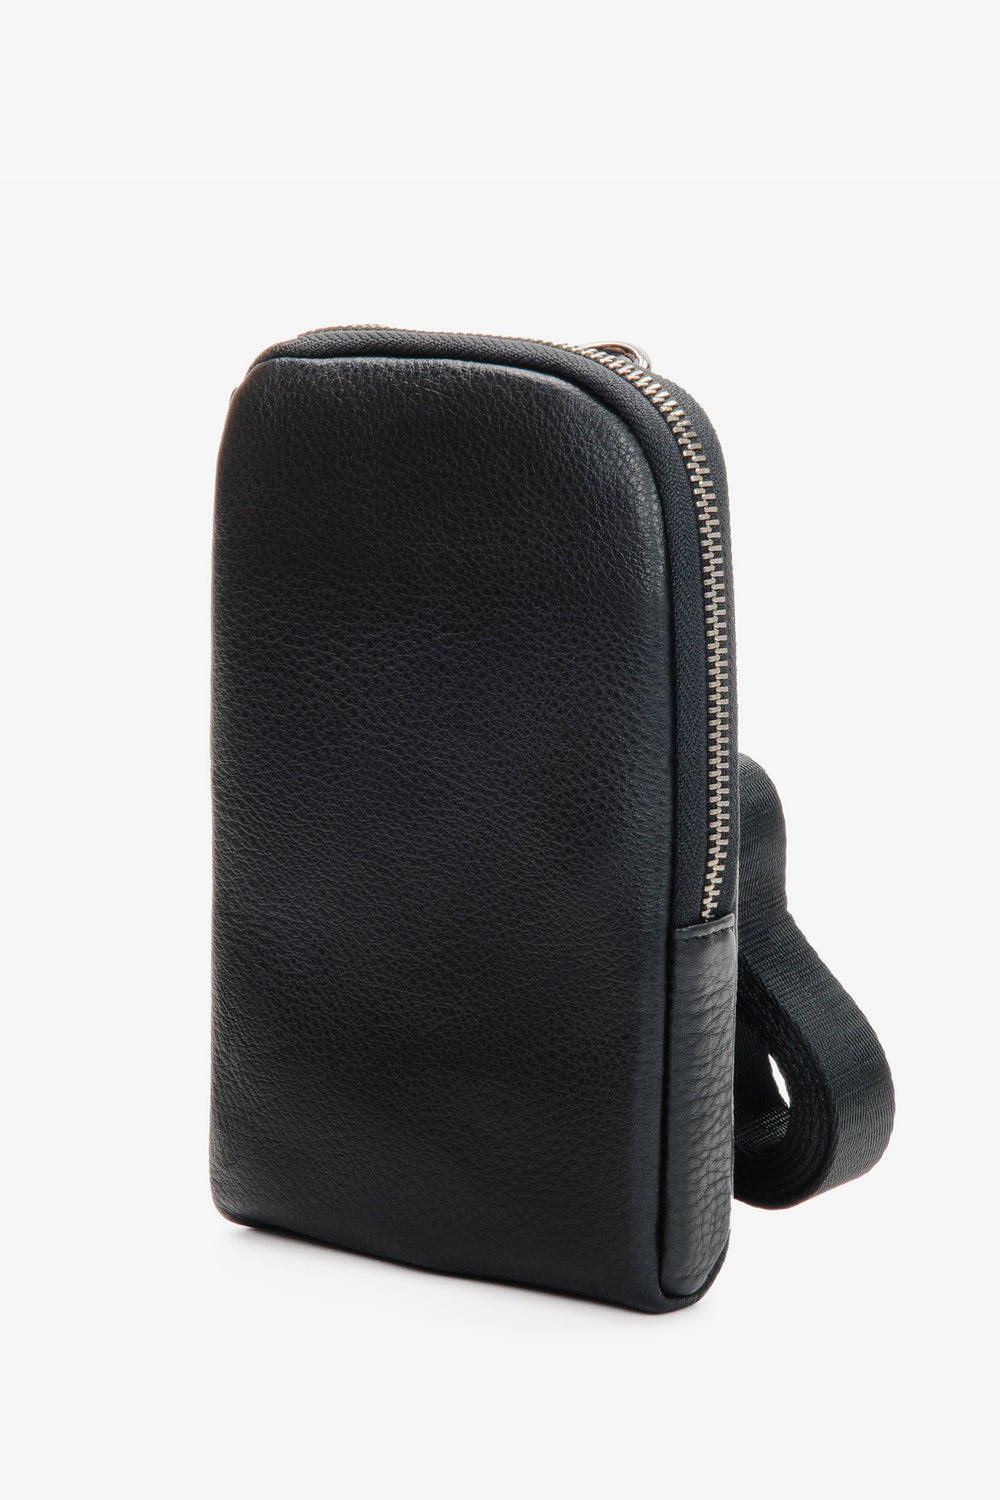 Men's Black Wallet Style Bag made of Genuine Leather Estro ER00110902.